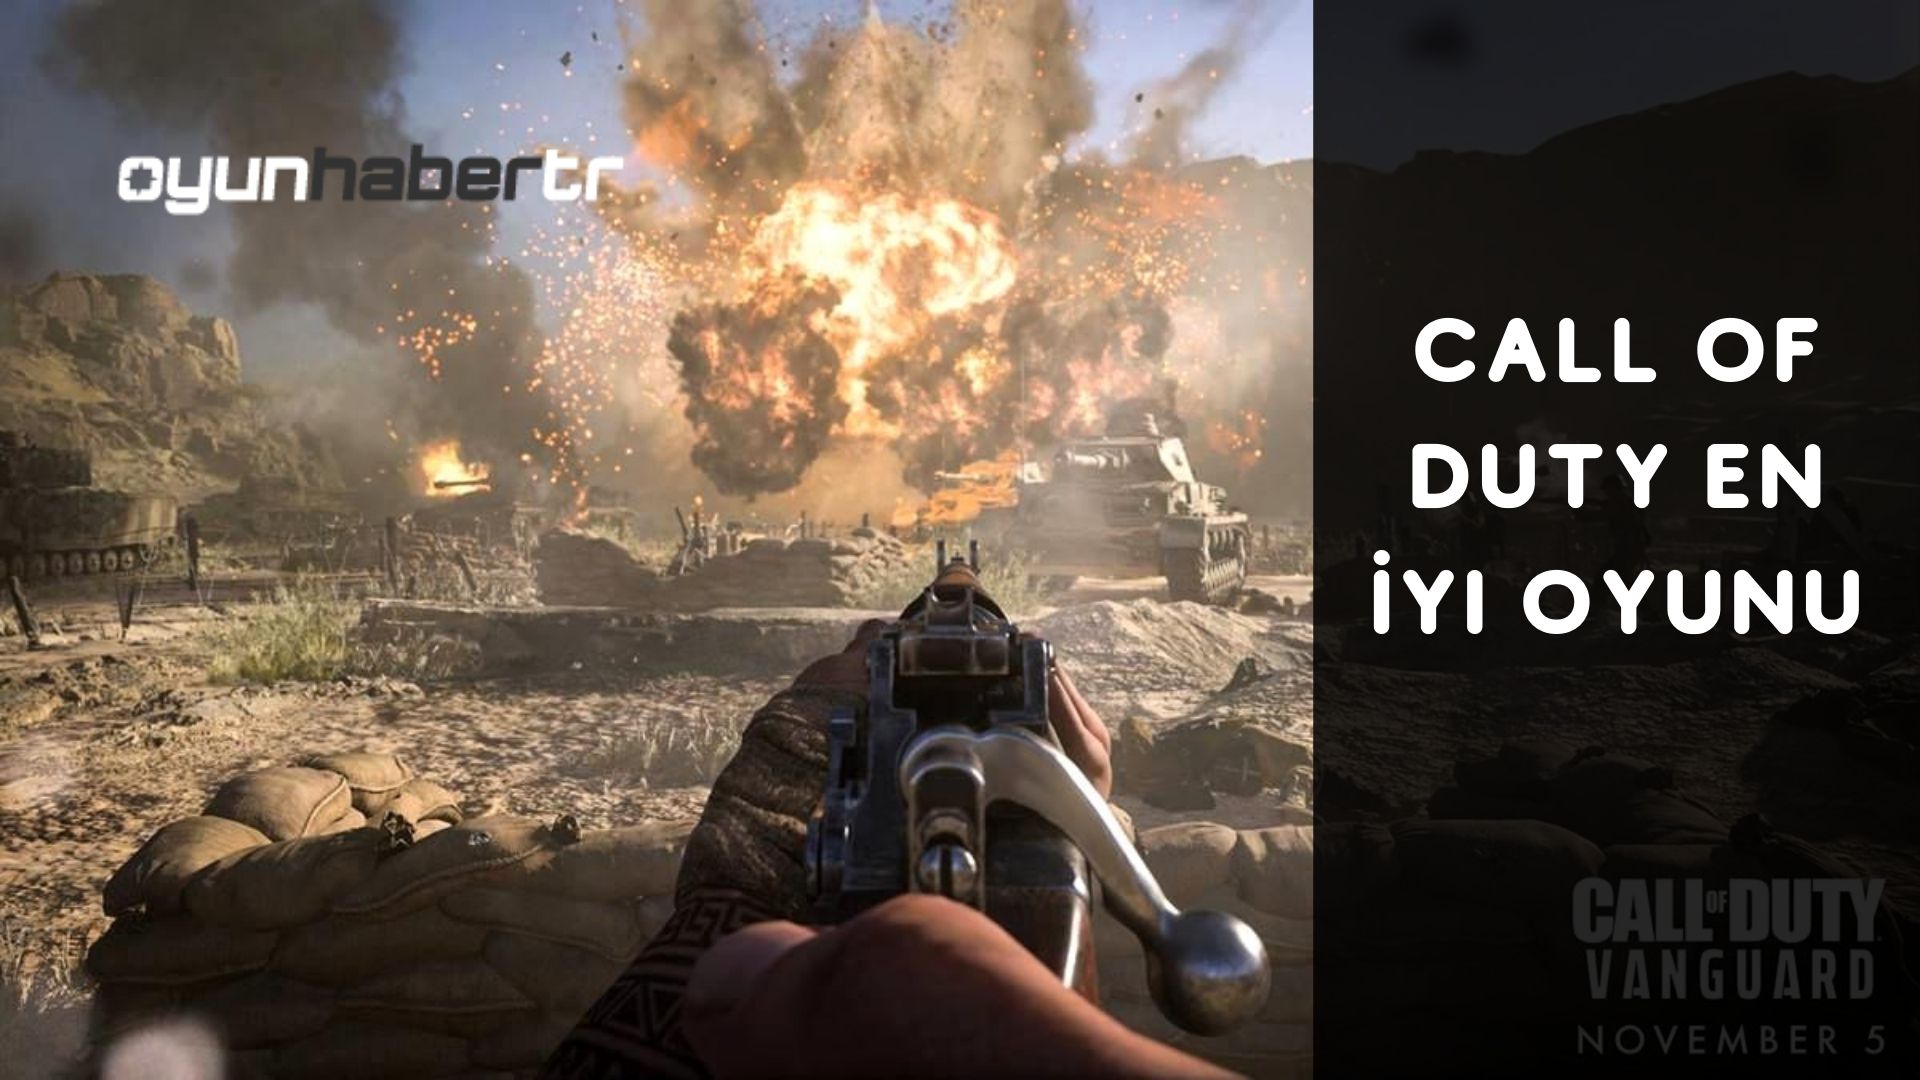 Call Of Duty En İyi Oyunu Hangisi